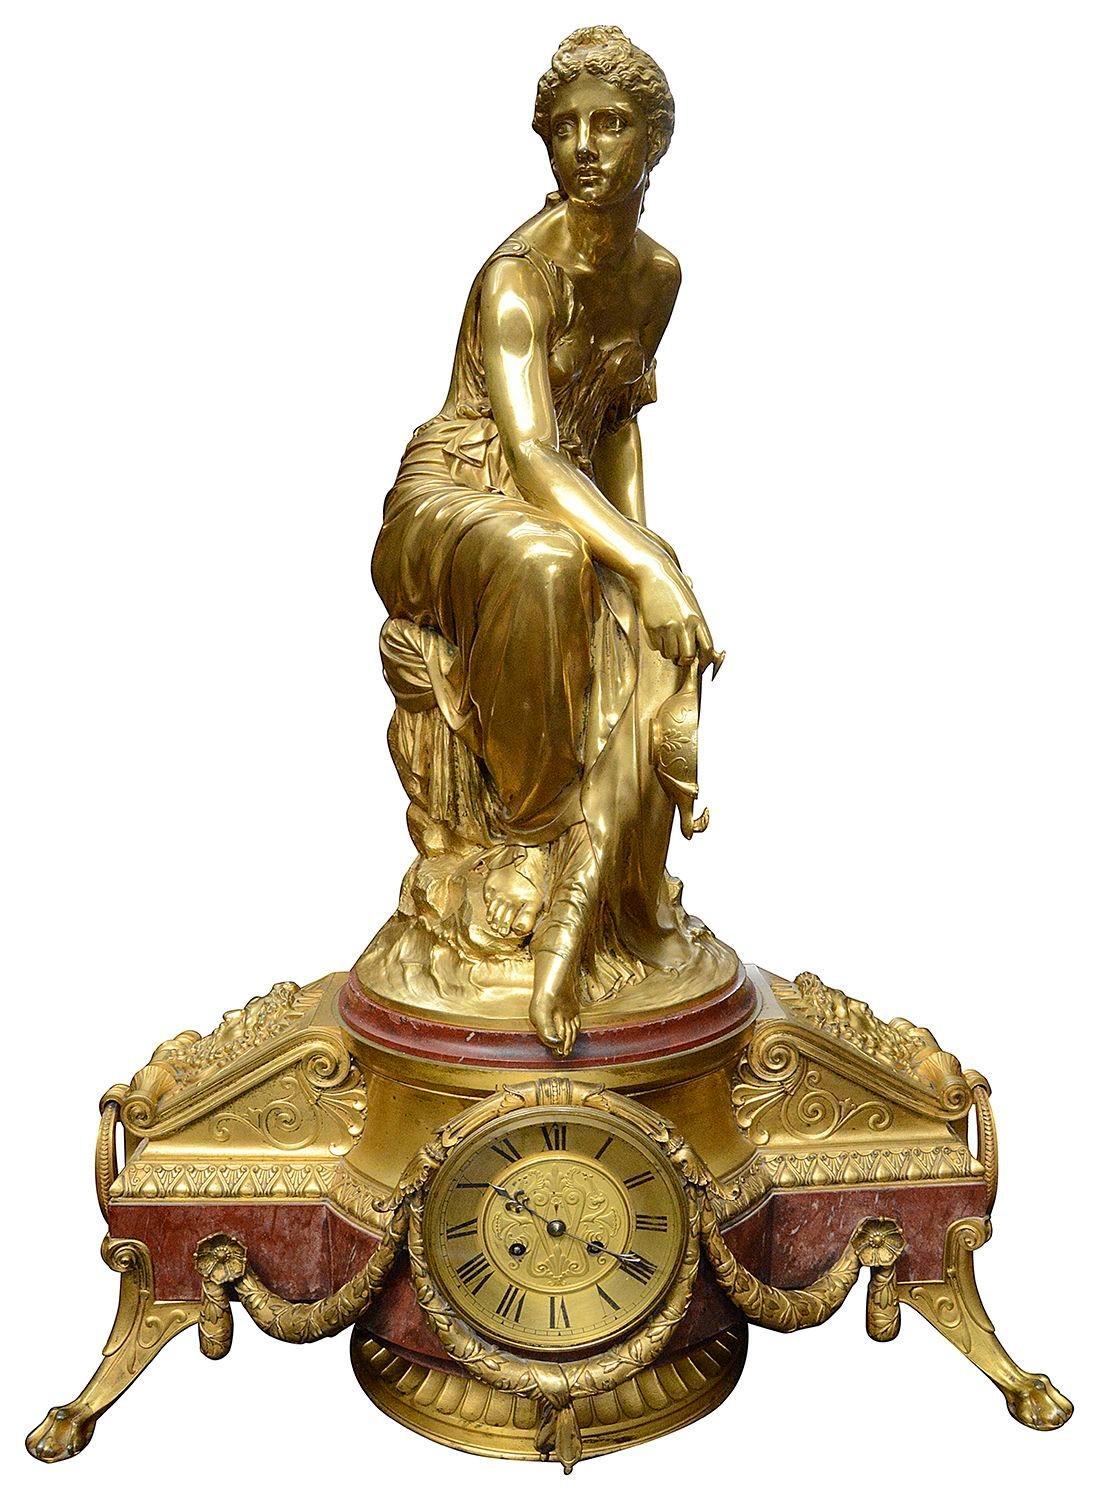 Une spectaculaire horloge française du XIXe siècle en marbre rouge et en bronze doré, avec un beau Madian assis tenant une lampe à huile au-dessus de supports masqués avec des poignées en anneau de chaque côté du cadran de l'horloge. La durée de